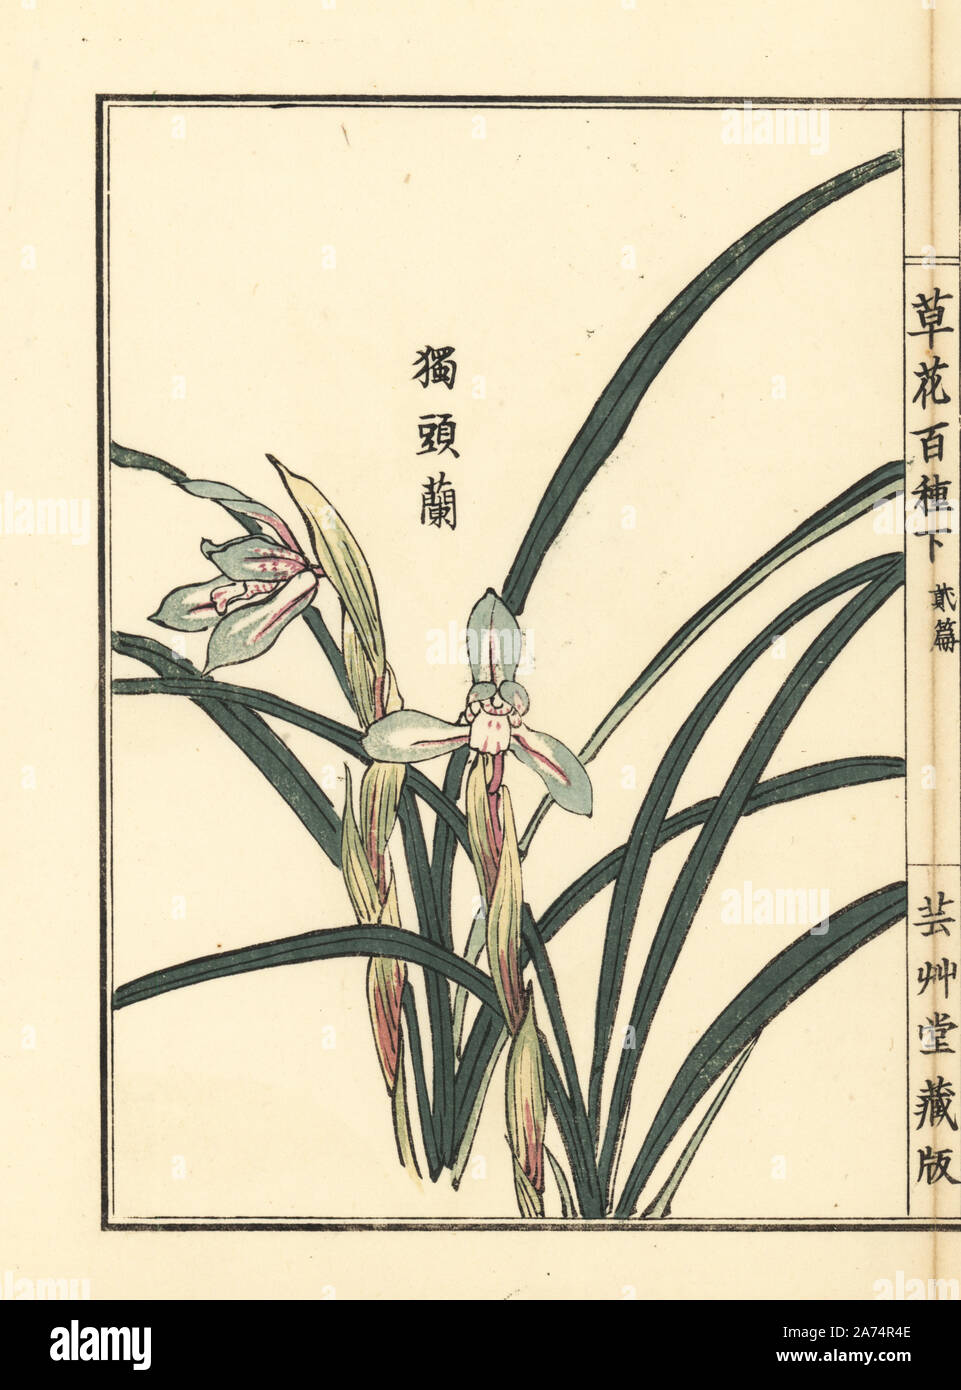 Dokutoran, shuran or noble orchid, Cymbidium goeringii. Handcoloured woodblock print by Kono Bairei from Kusa Bana Hyakushu (One Hundred Varieties of Flowers), Tokyo, Yamada, 1901. Stock Photo